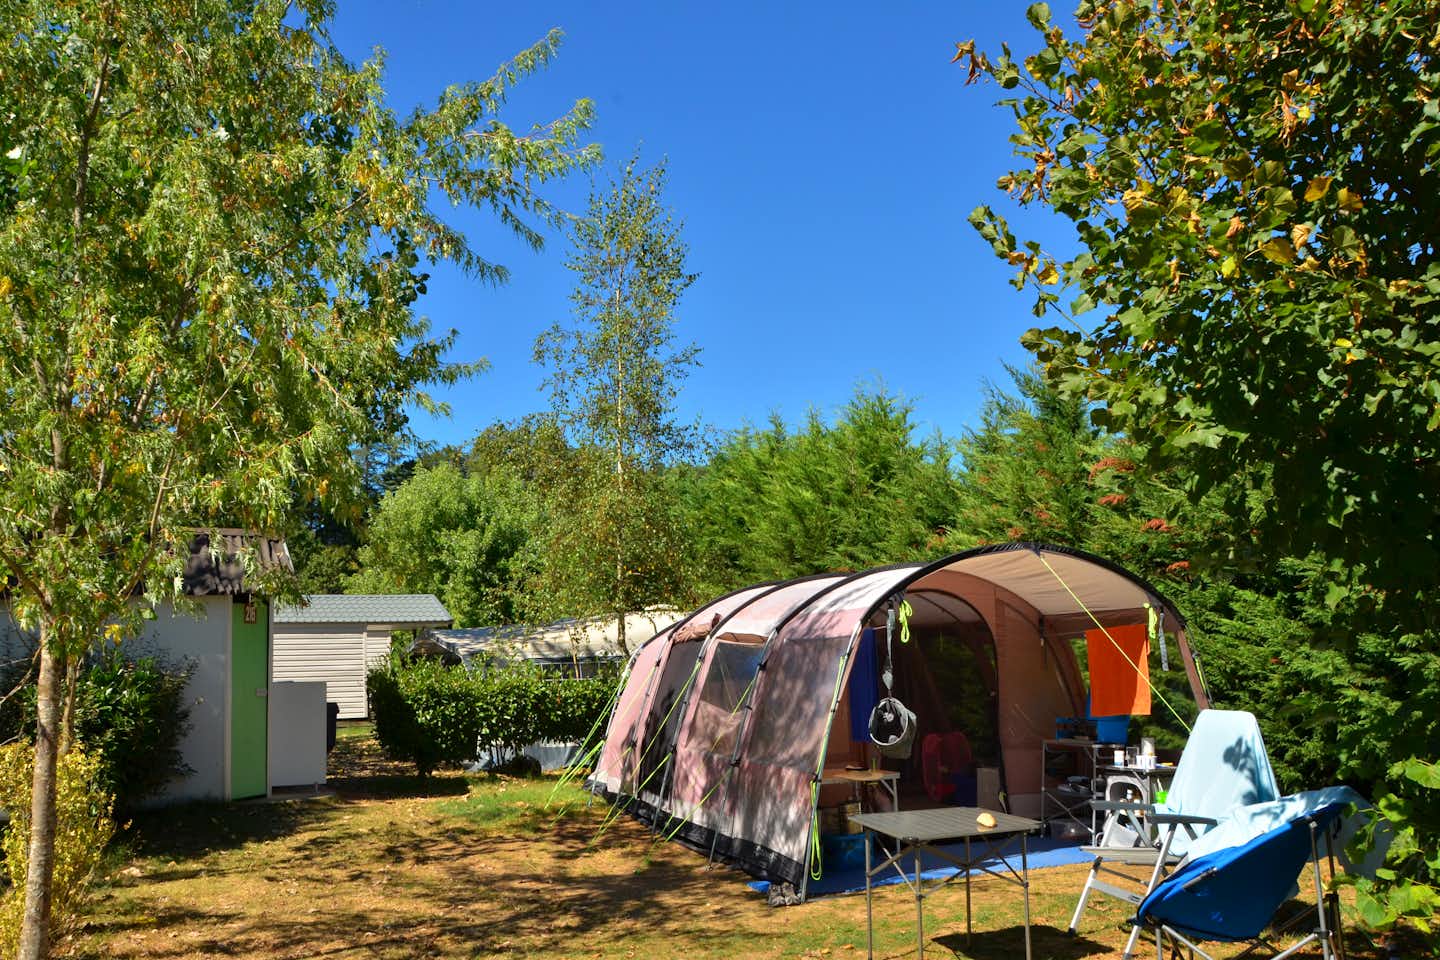 Camping Marmotel -  Zeltplatz zwischen Bäumen auf dem Campingplatz